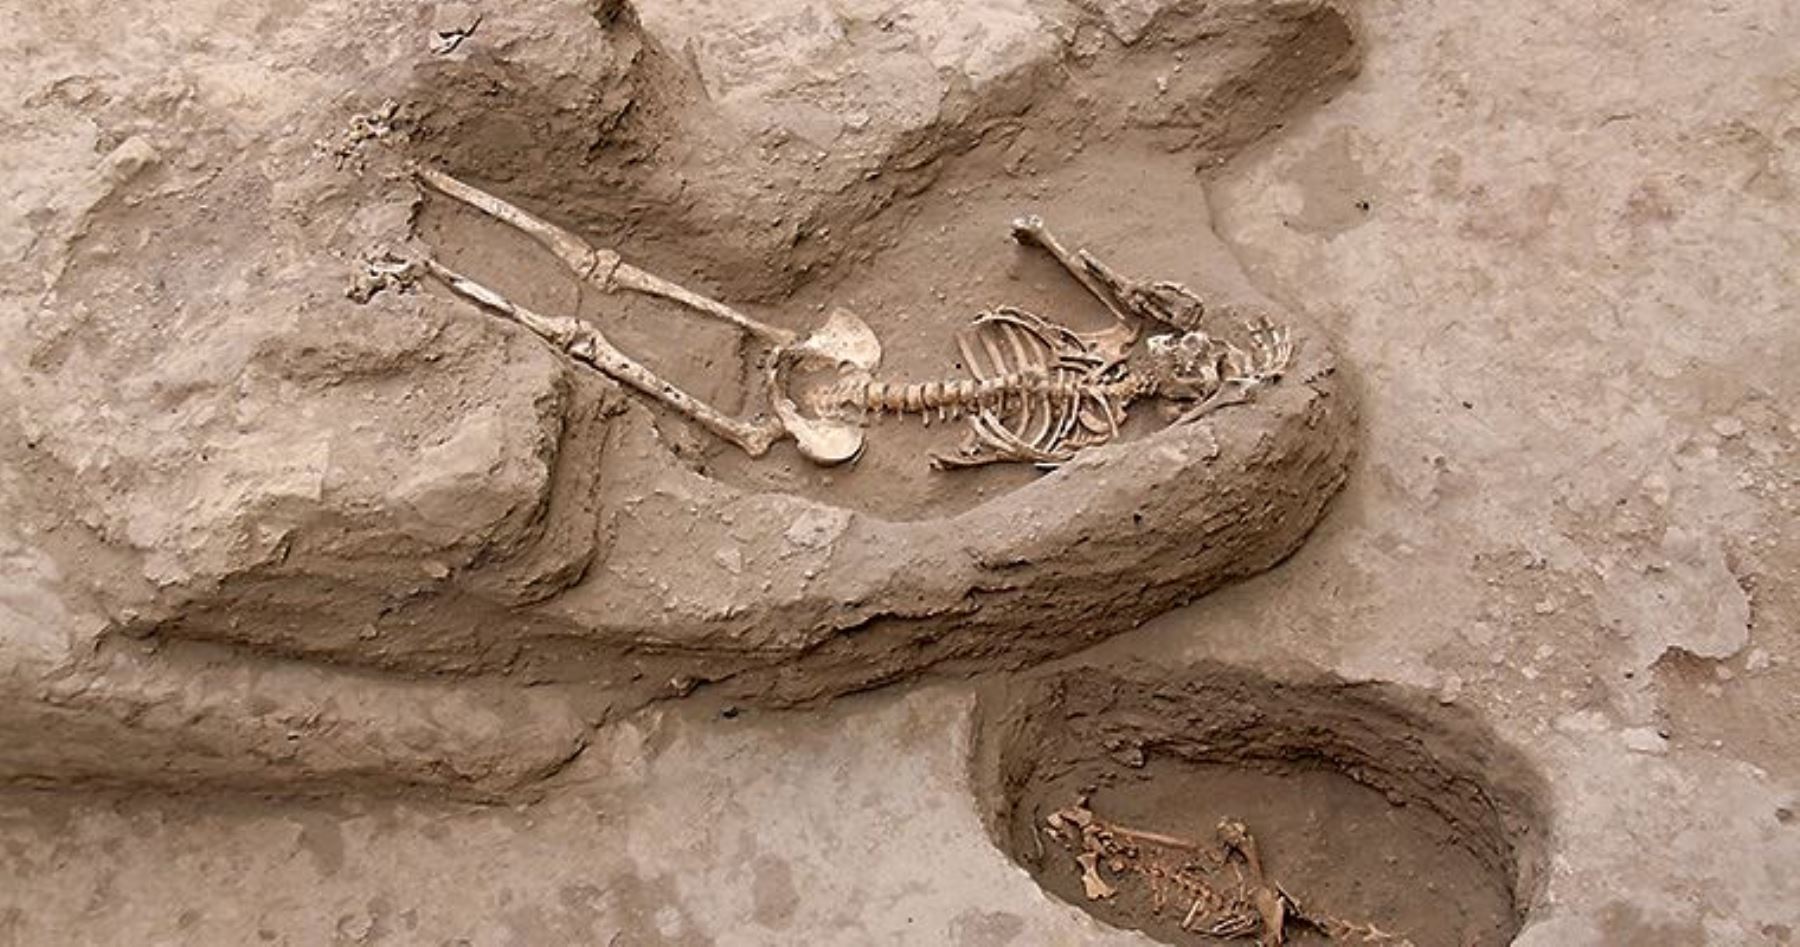 Seis restos humanos colocados durante un ritual de enterramiento fueron hallados en un pequeño templo descubierto en el complejo arqueológico Huaca Santa Rosa de Pucalá, localizado en el margen norte del valle medio de Lambayeque, a unos 30 kilómetros de la ciudad de Chiclayo.